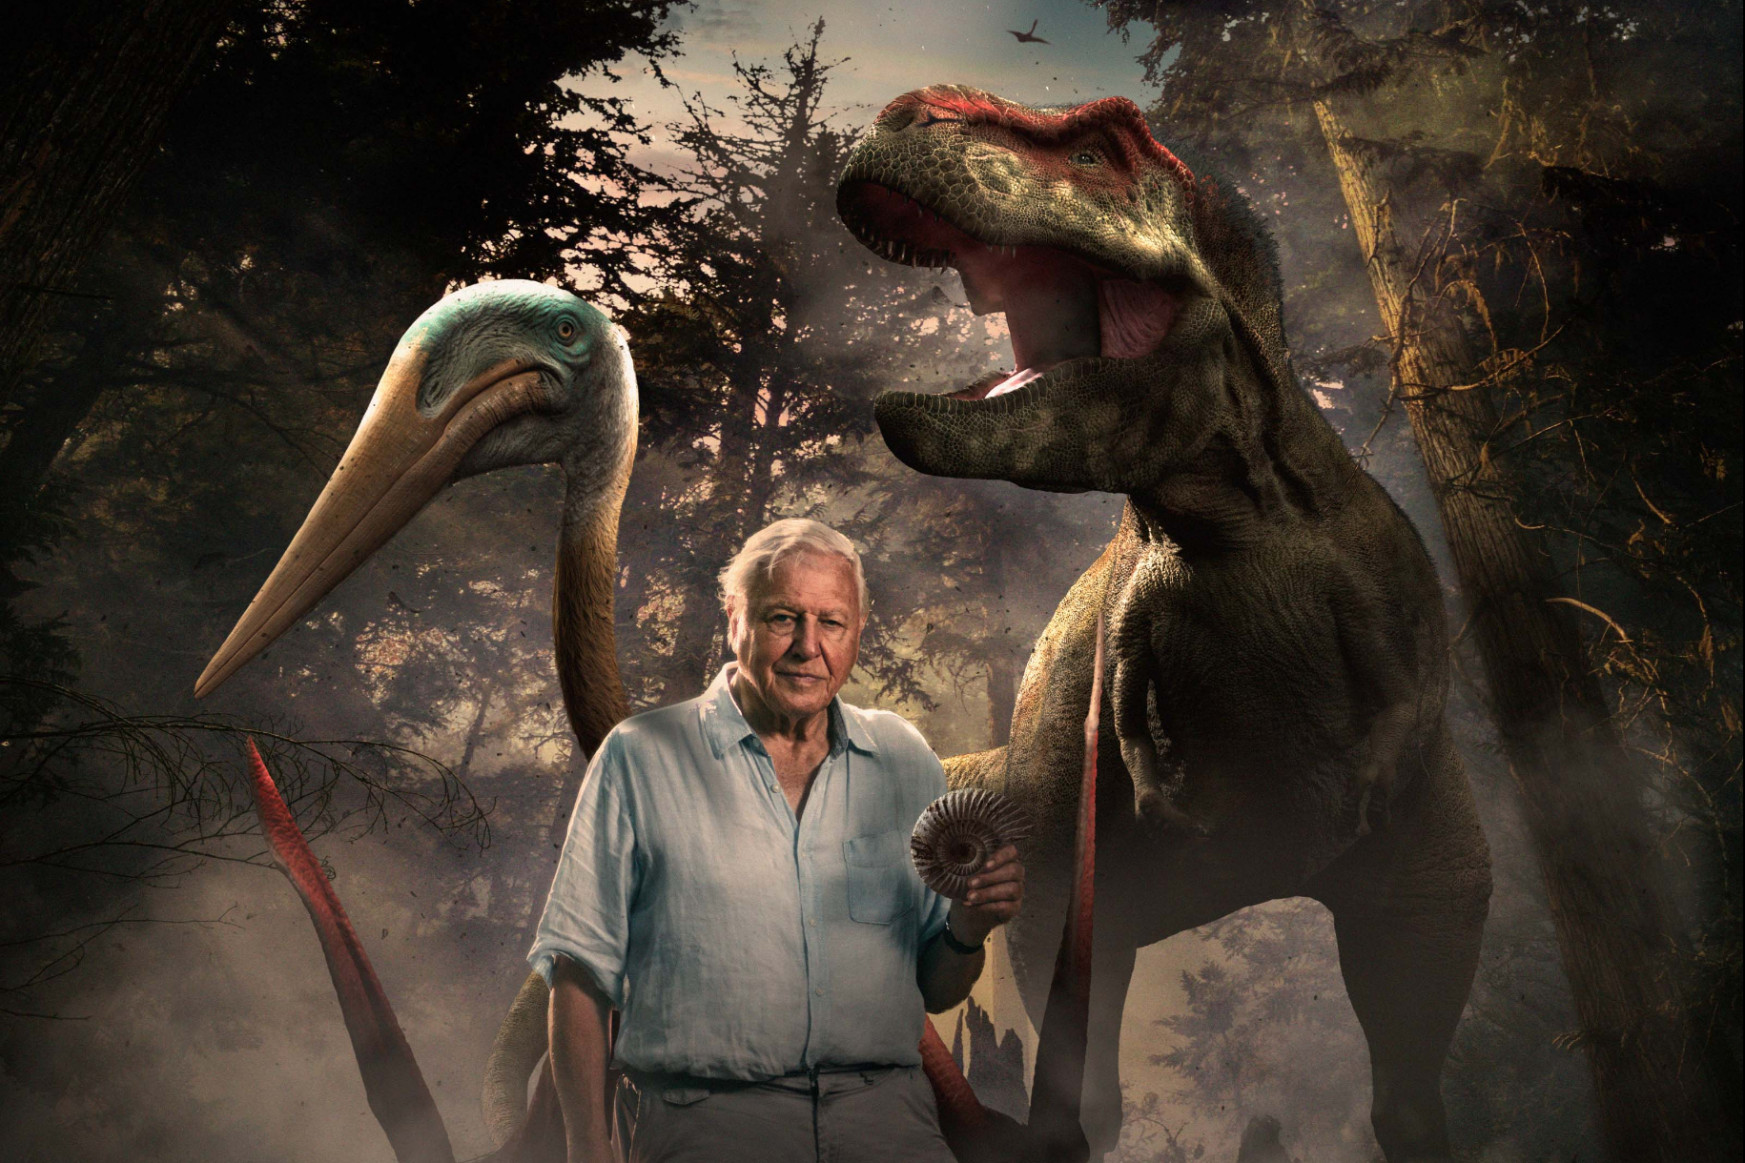 David Attenborough bemutatja azt a dinoszauruszlábat, ami megmaradt az aszteroida
becsapódása után